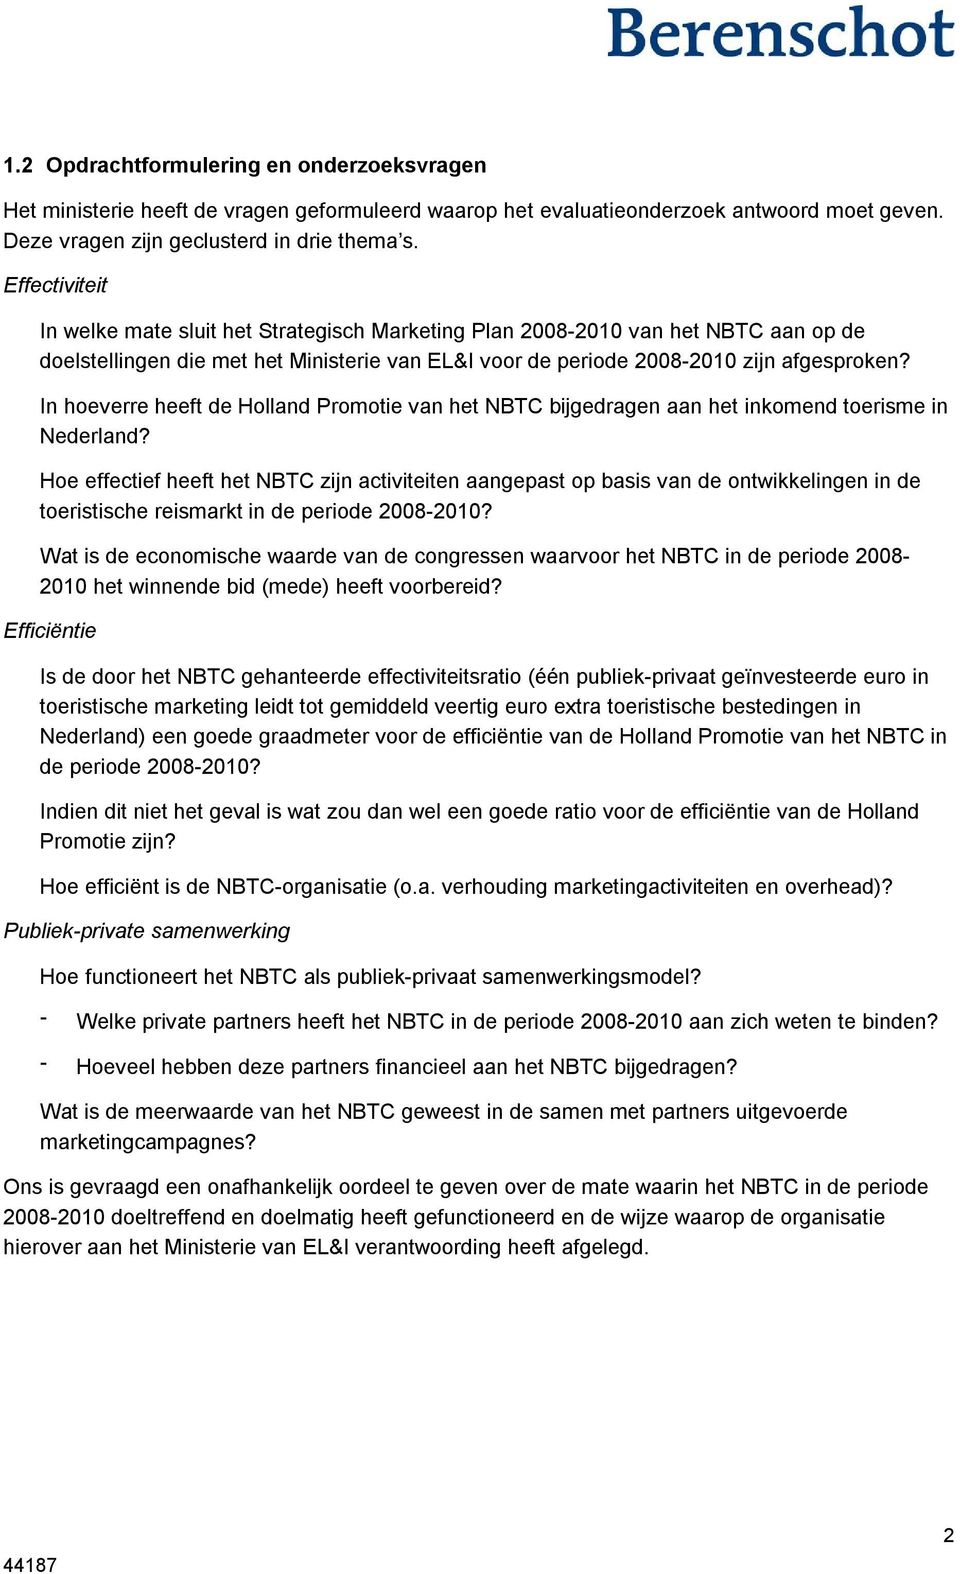 In hoeverre heeft de Holland Promotie van het NBTC bijgedragen aan het inkomend toerisme in Nederland?